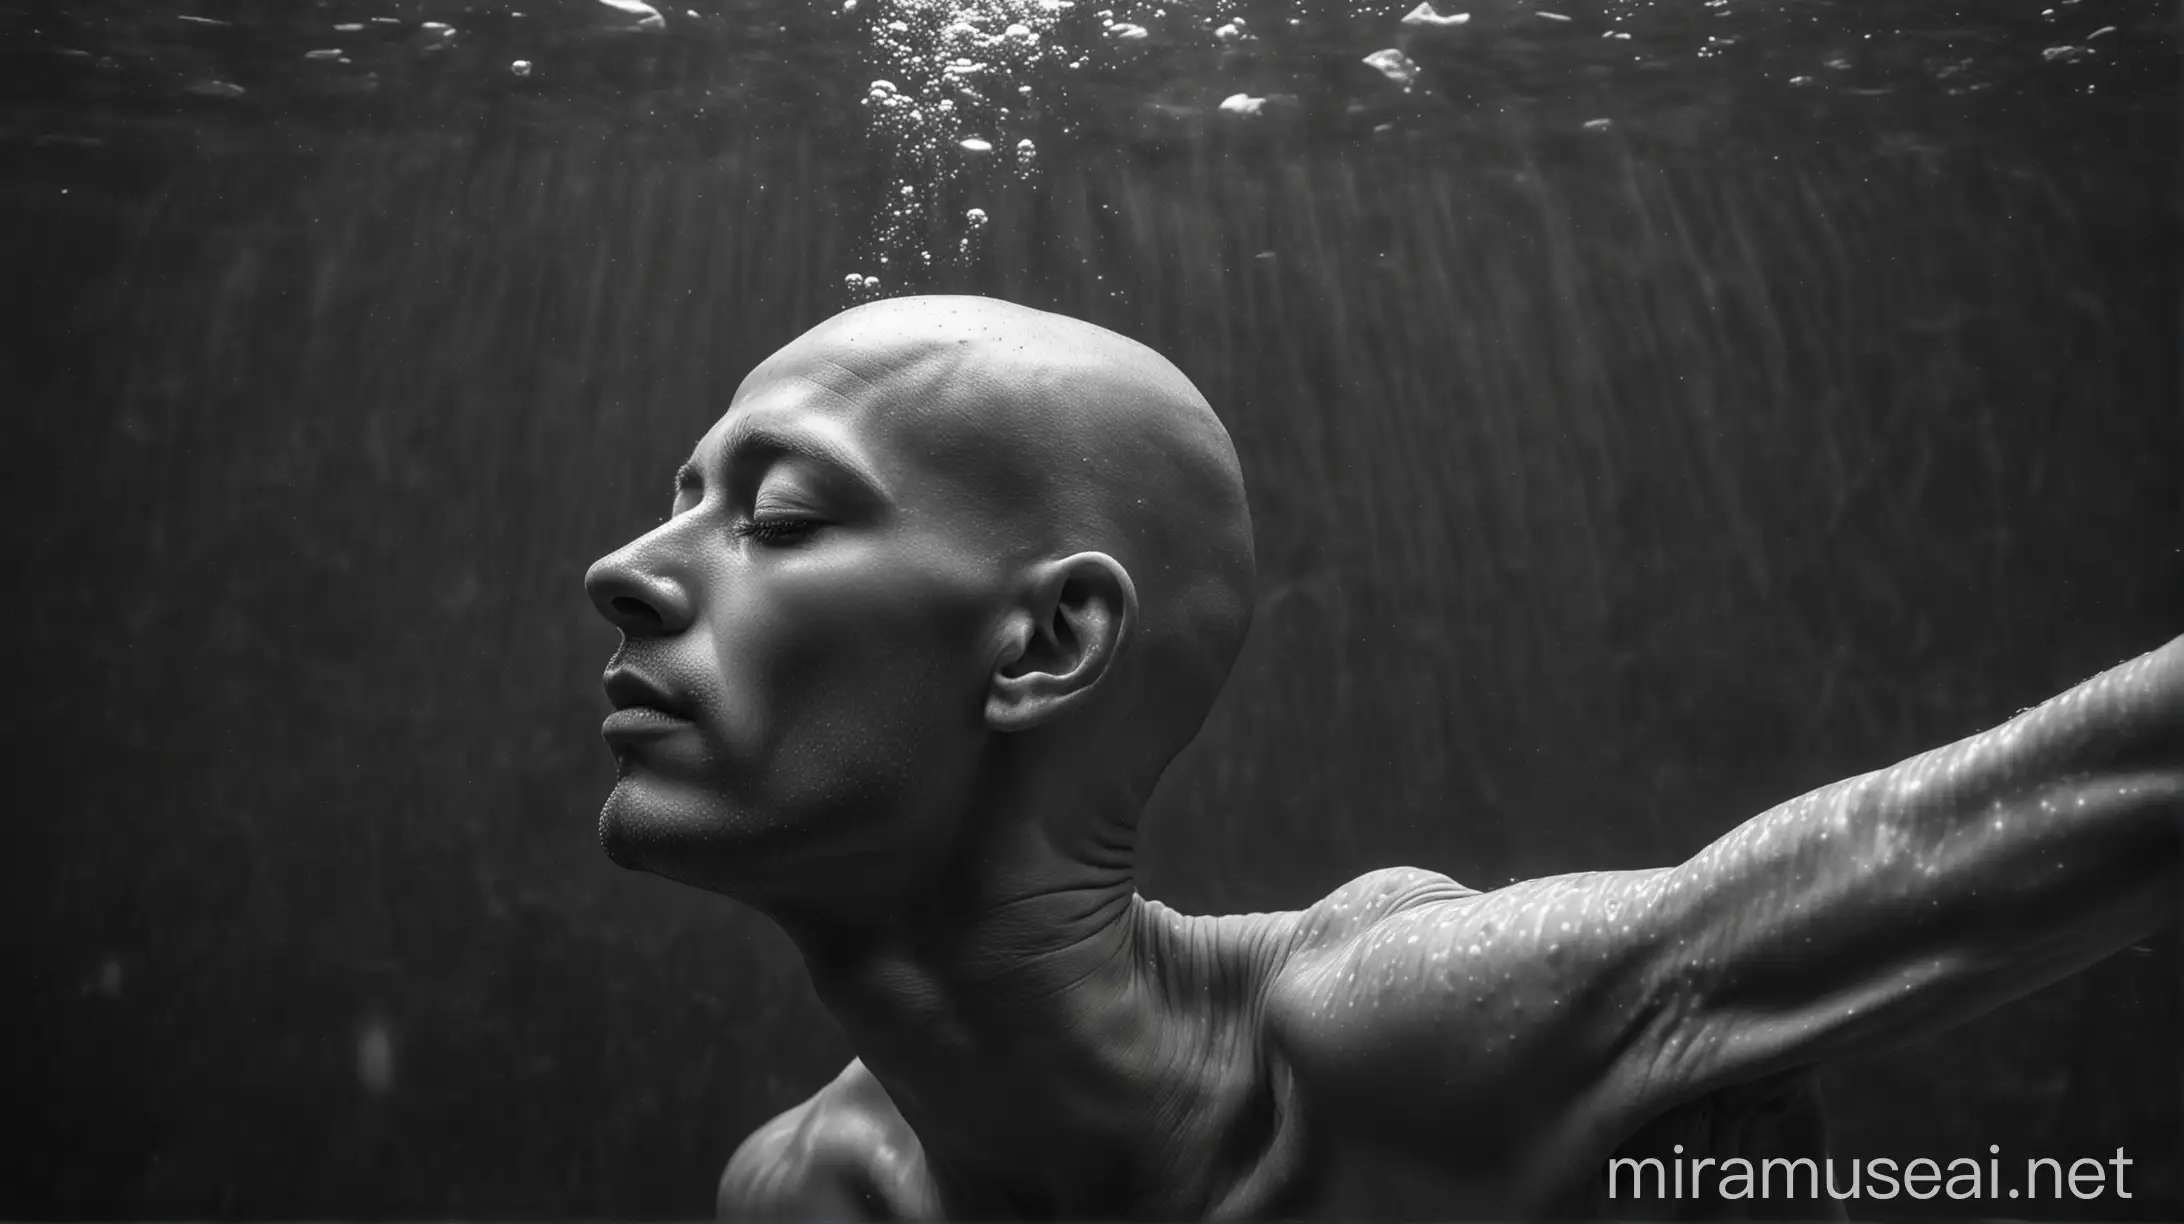 hairless man sleeping underwater, black and white photography